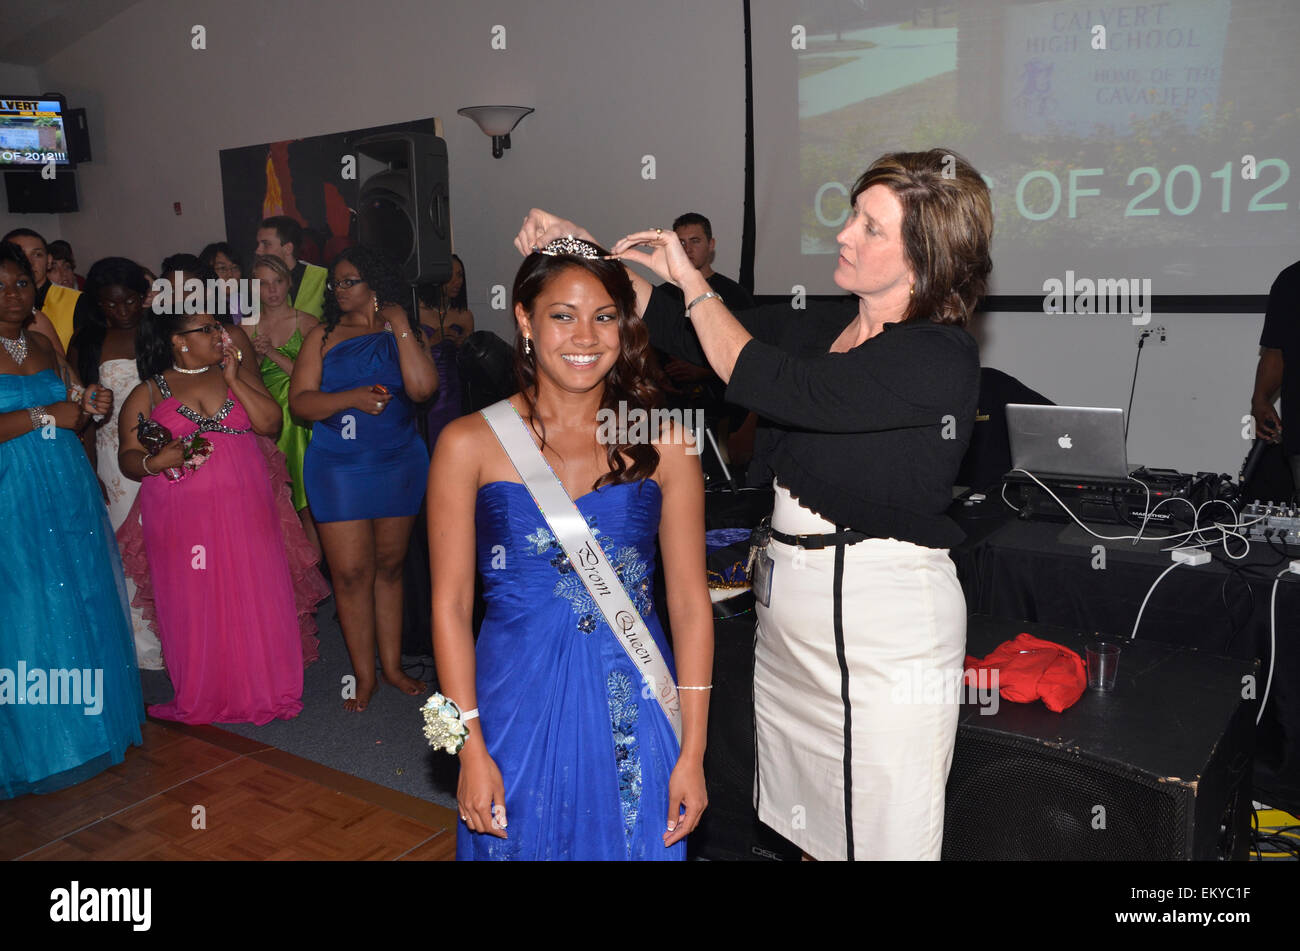 Joven está coronado high school prom queen en Maryland, EE.UU. Foto de stock